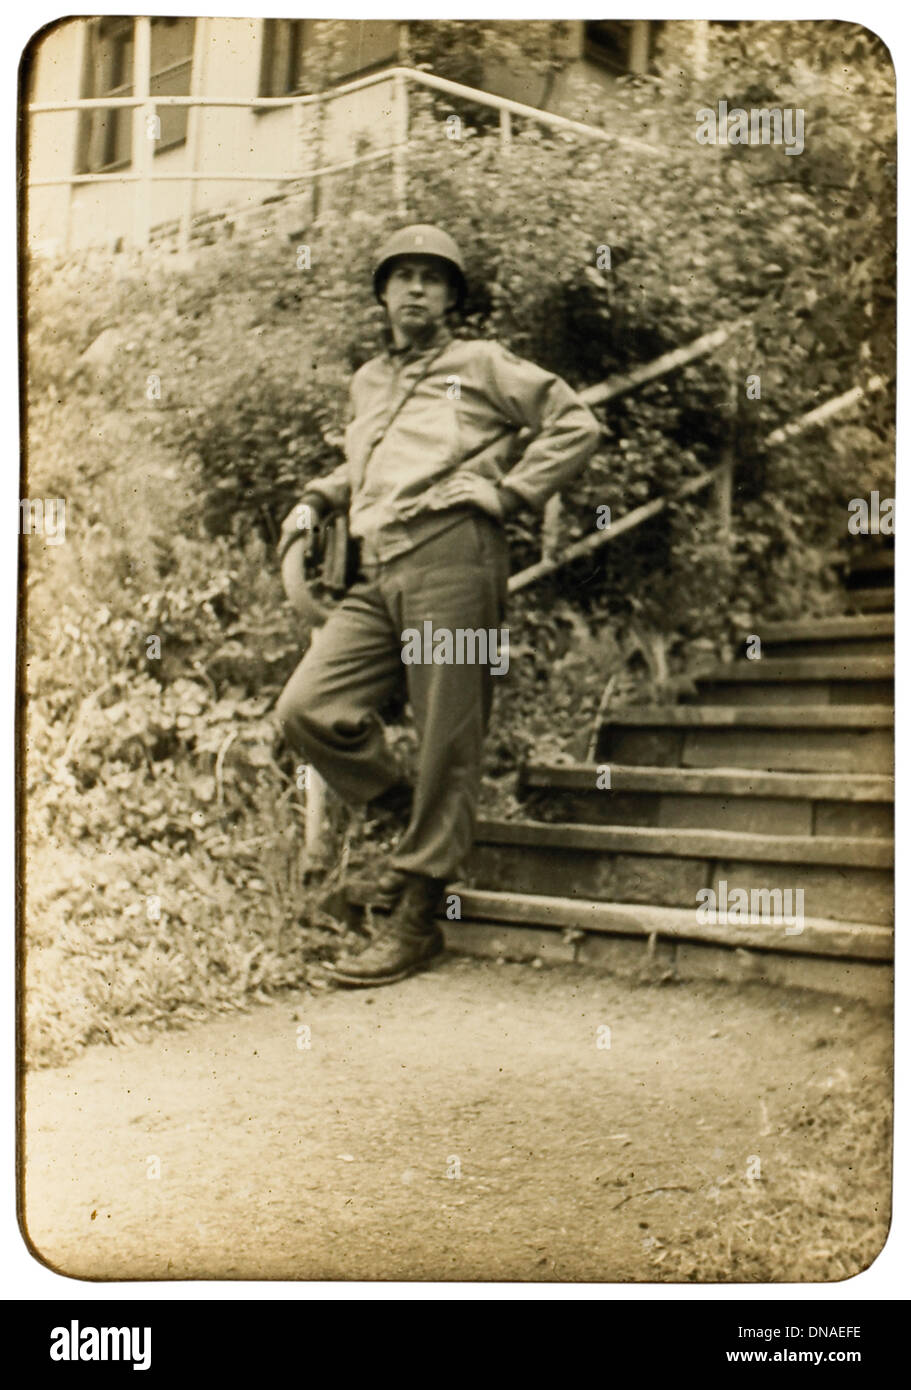 Soldato alla base della Scala, ritratto, durante la seconda guerra mondiale, terza divisione dell esercito, noi esercito militare, Europa 1943 Foto Stock